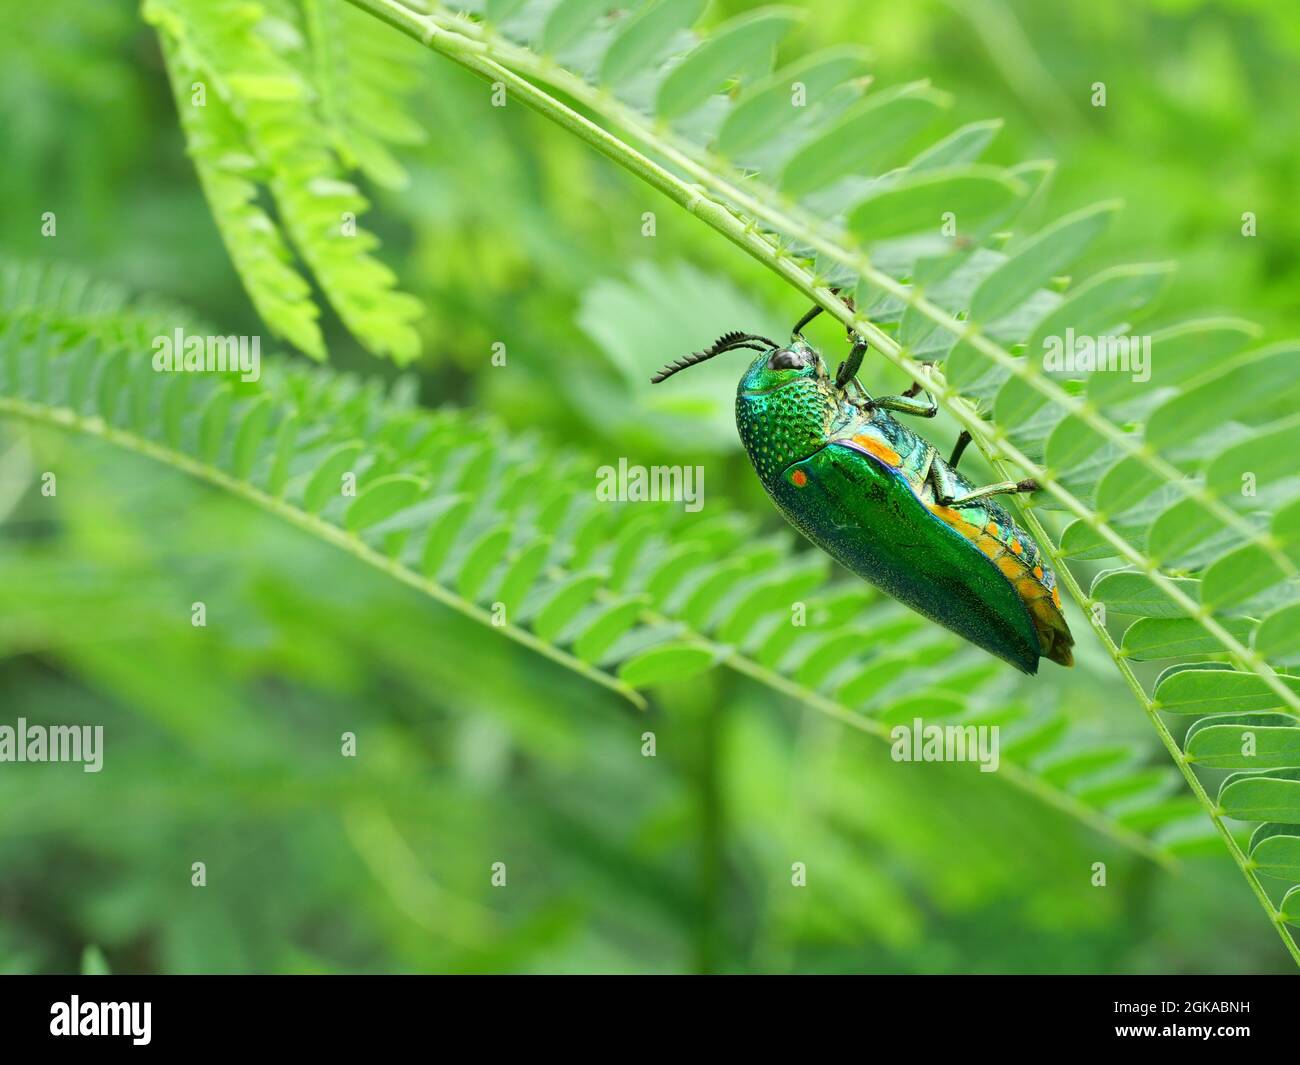 Grün-beinige metallische oder Jewel Beetle oder metallische Holz-langweilige Käfer ( Sternocera aequisignata ) auf Blatt-Baum-Plamt mit natürlichem grünen Hintergrund Stockfoto